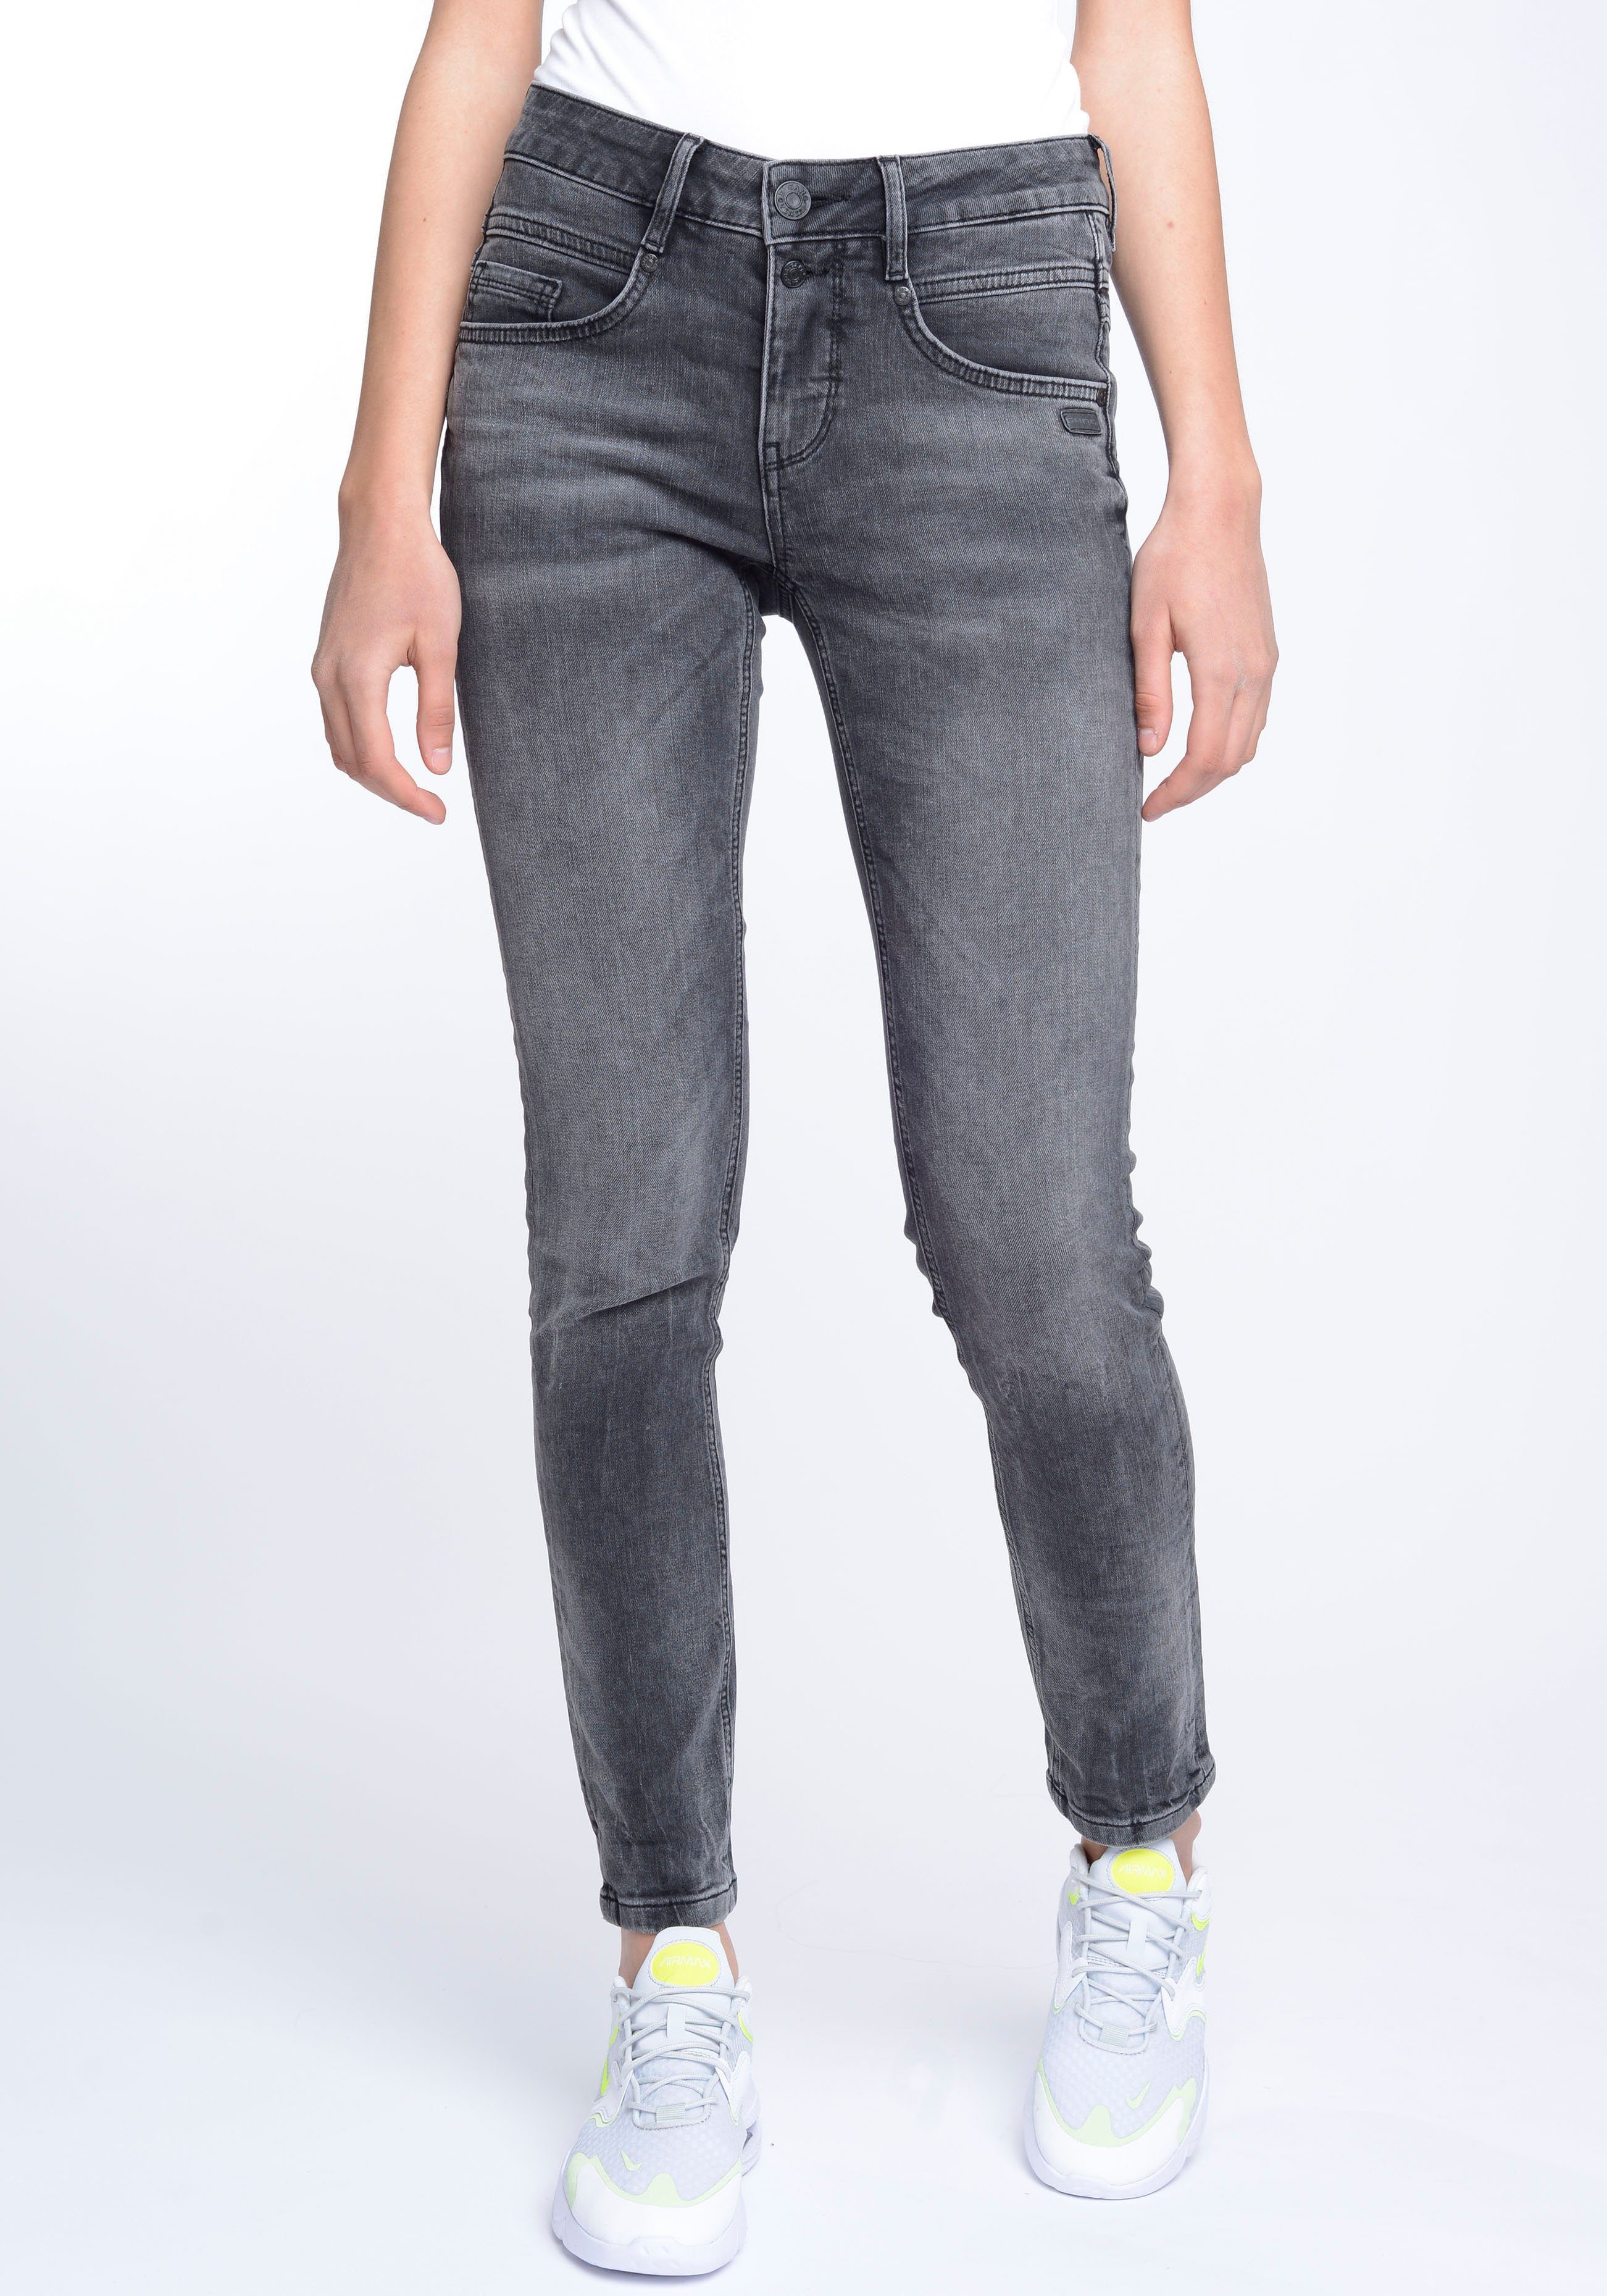 GANG Skinny-fit-Jeans 94MORA mit Passe und used vorne 3-Knopf-Verschluss black